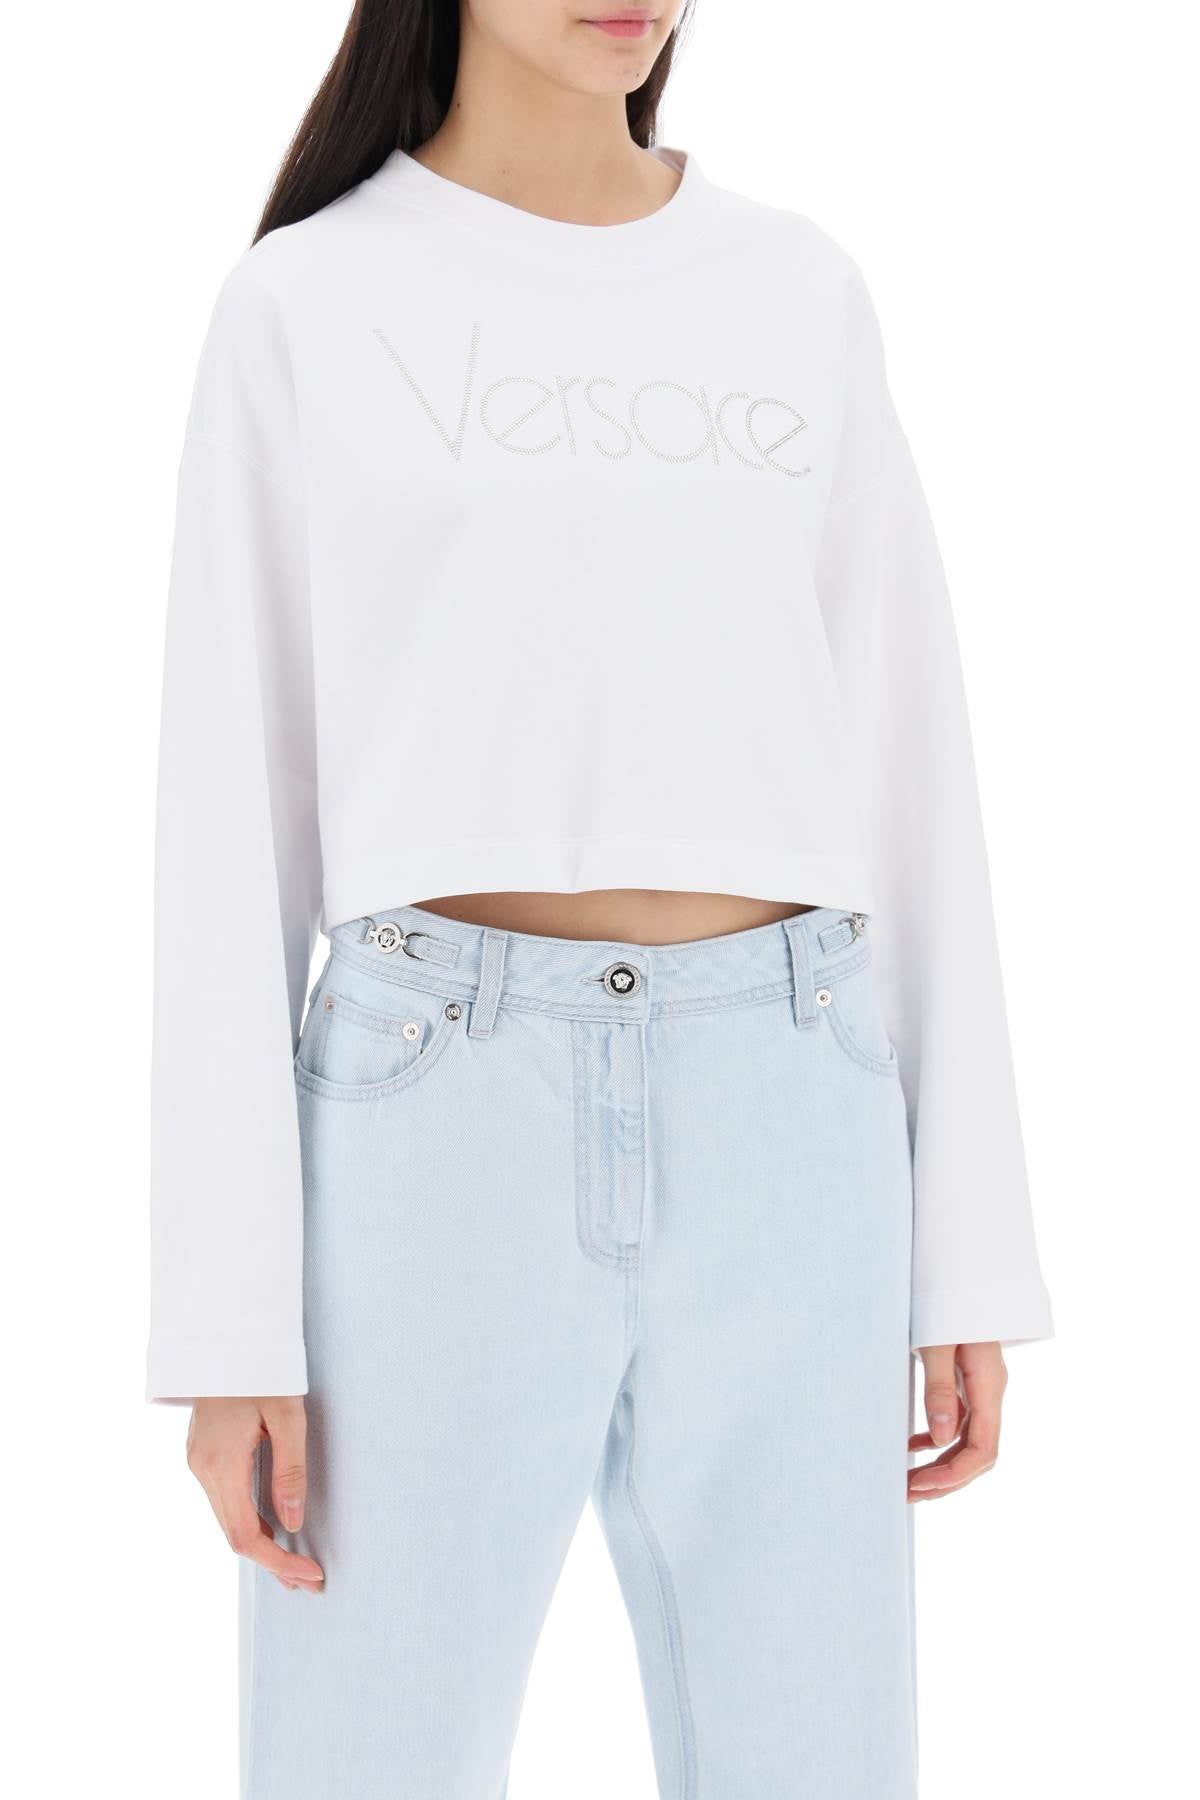 Versace Cropped Sweatshirt With Rhinestone White